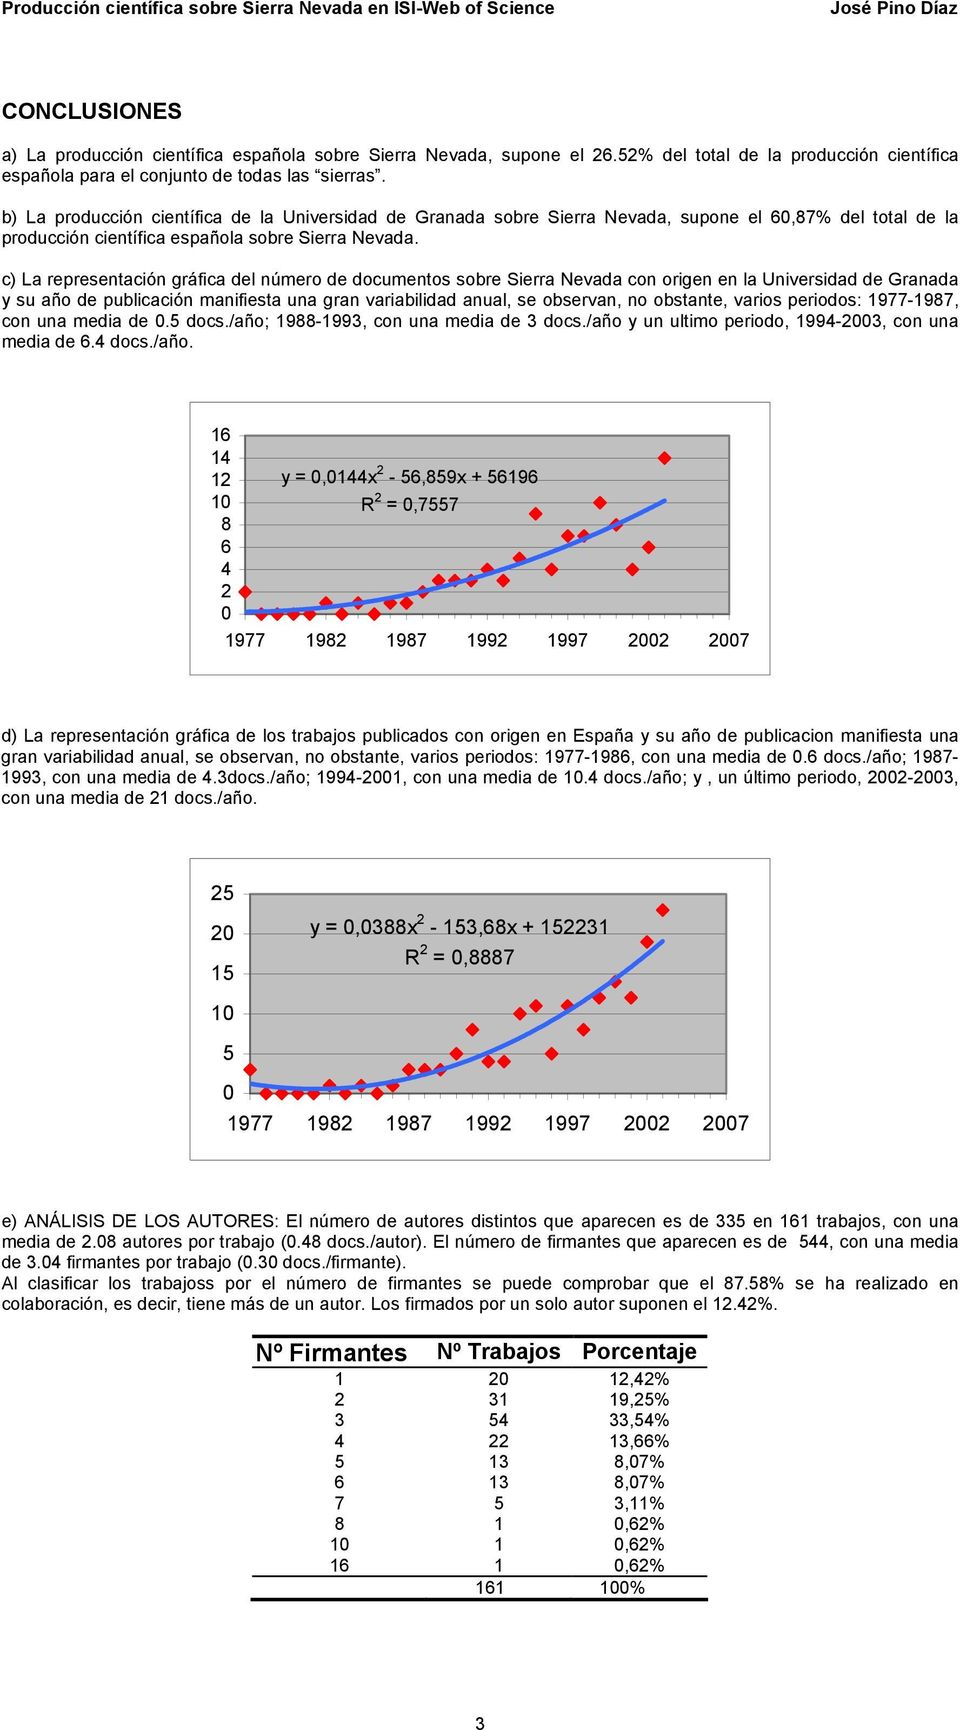 c) La representación gráfica del número de documentos sobre Sierra Nevada con origen en la Universidad de Granada y su año de publicación manifiesta una gran variabilidad anual, se observan, no